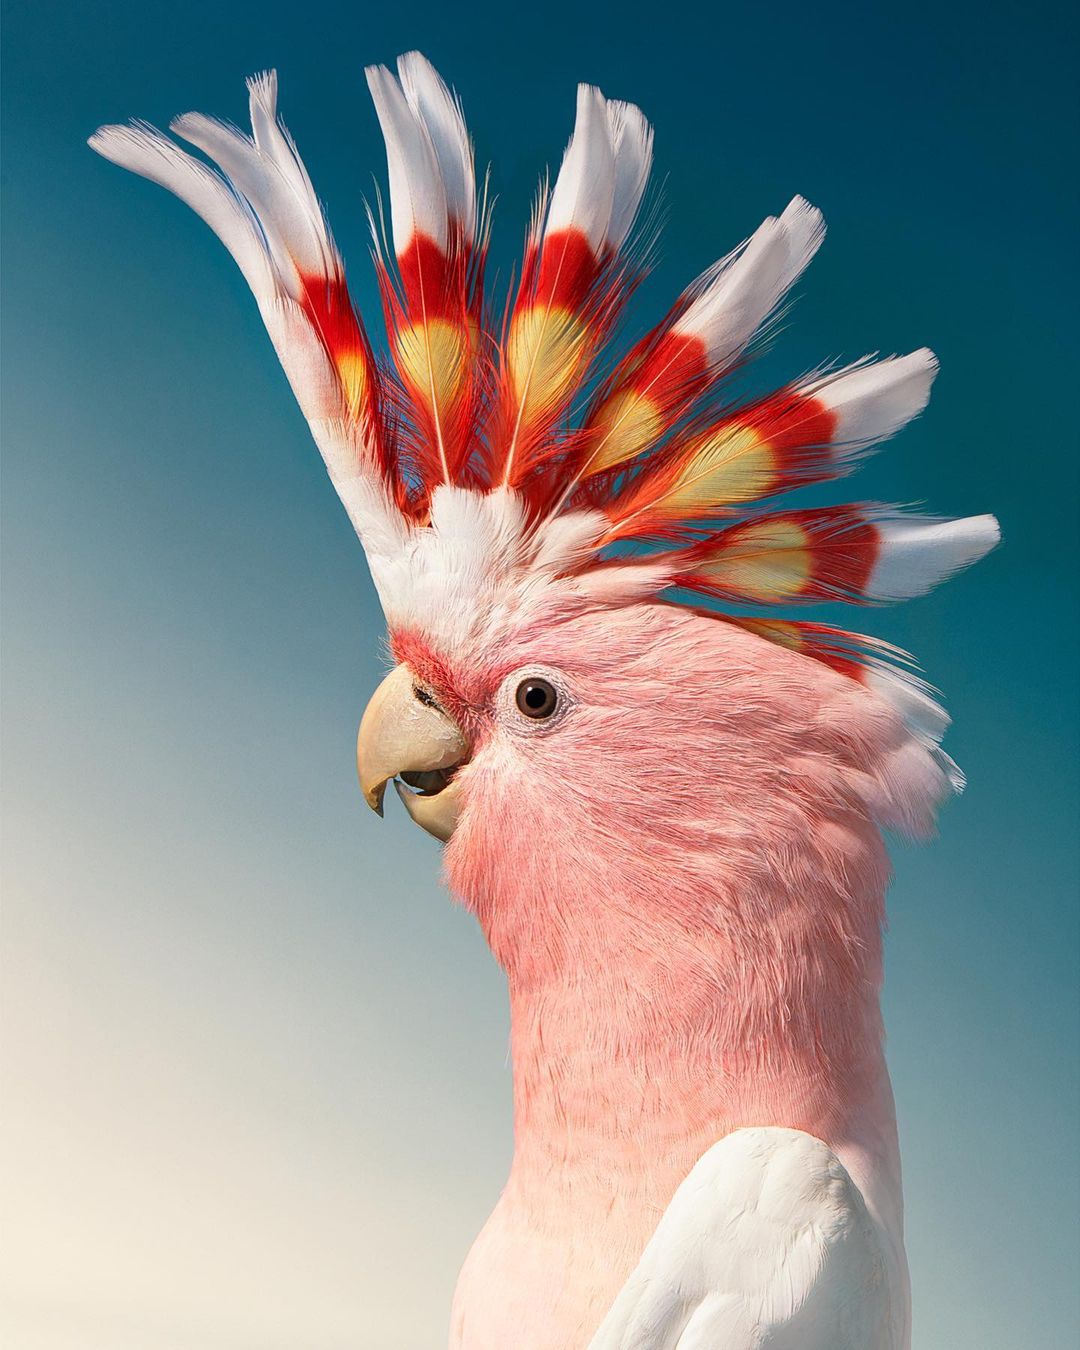 10+ невероятно красивых птиц, которым место на обложке журналов pixabaycomФотограф, также, синицаФилиппинский, орелКакаду, майора, МитчеллаВенценосный, голубь, ВикторияТукан, ТокоКрасный, кардиналТим, является, журавльЯкобинский, автором, Endangered, «Находящиеся, угрозой, исчезновения», и More, Human, «Больше